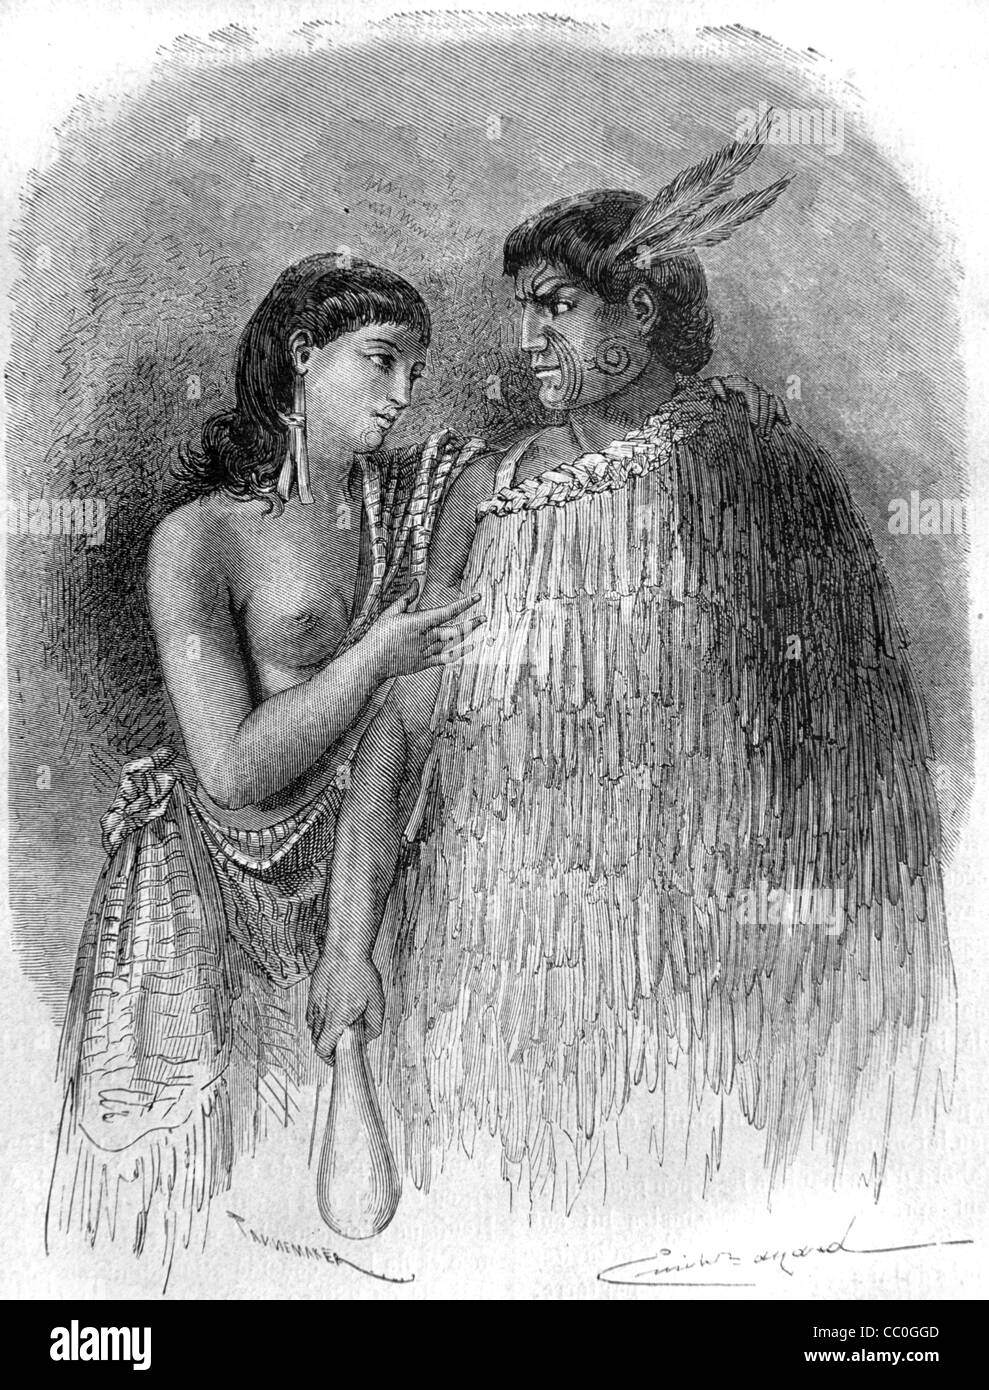 Hone Heke, ou Hone Wiremu Heke Pakai (1807?-1850), chef et chef maori, et épouse, Nouvelle-Zélande. Instigateur de la guerre de Flagstaff. Illustration ancienne ou gravure Banque D'Images